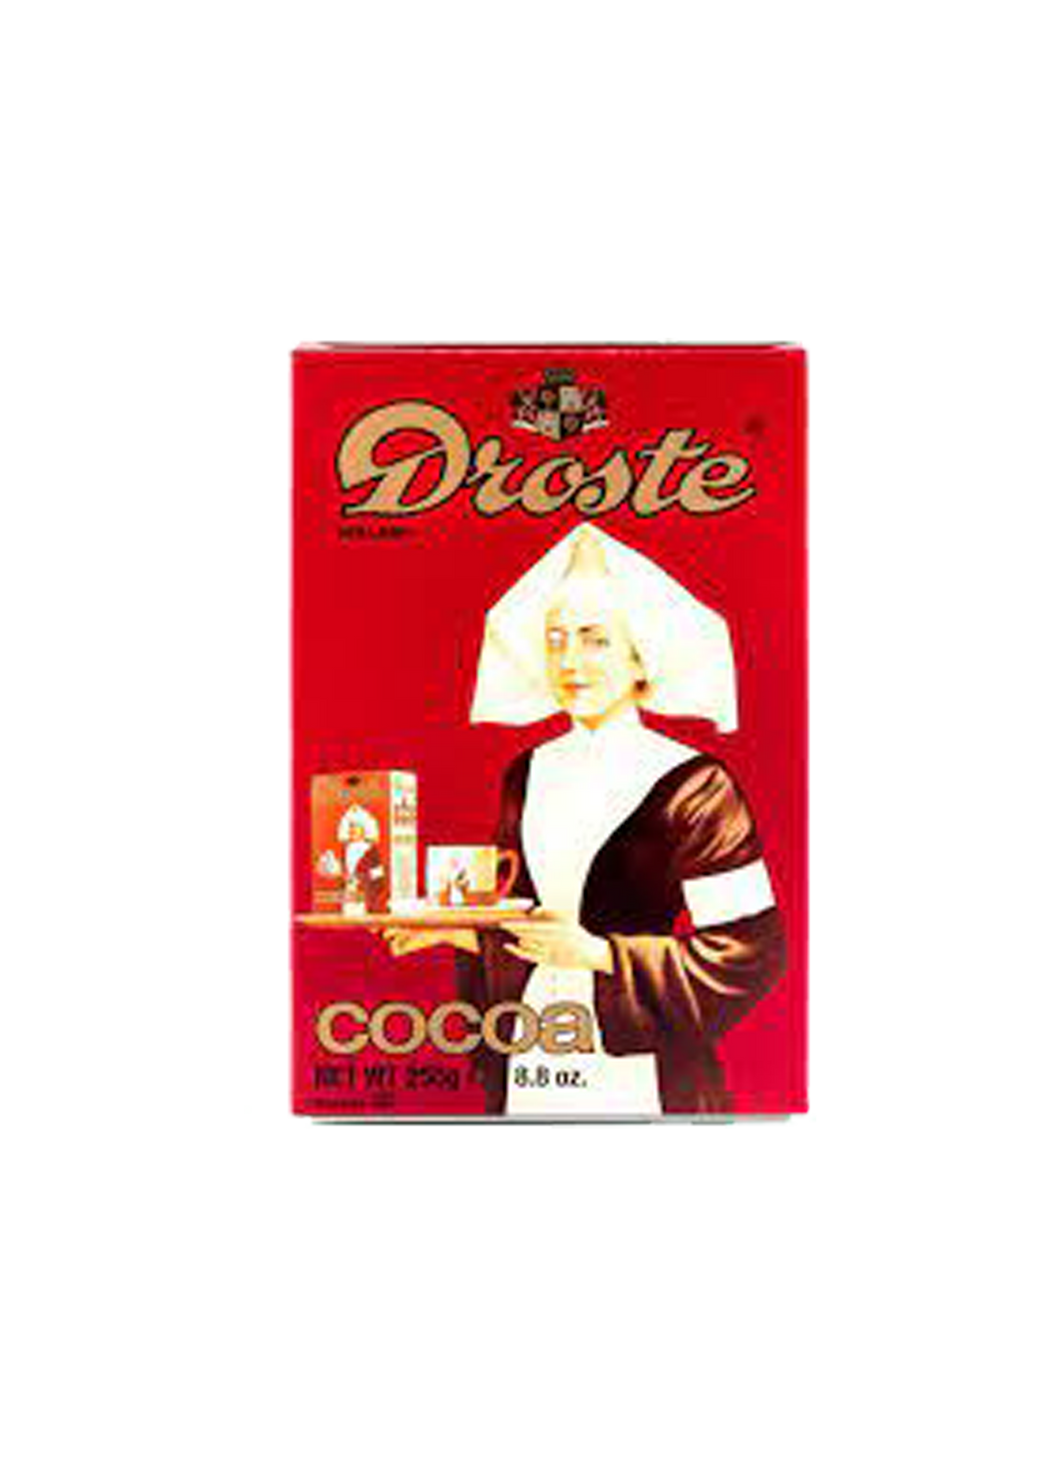 Droste Cocoa 250g